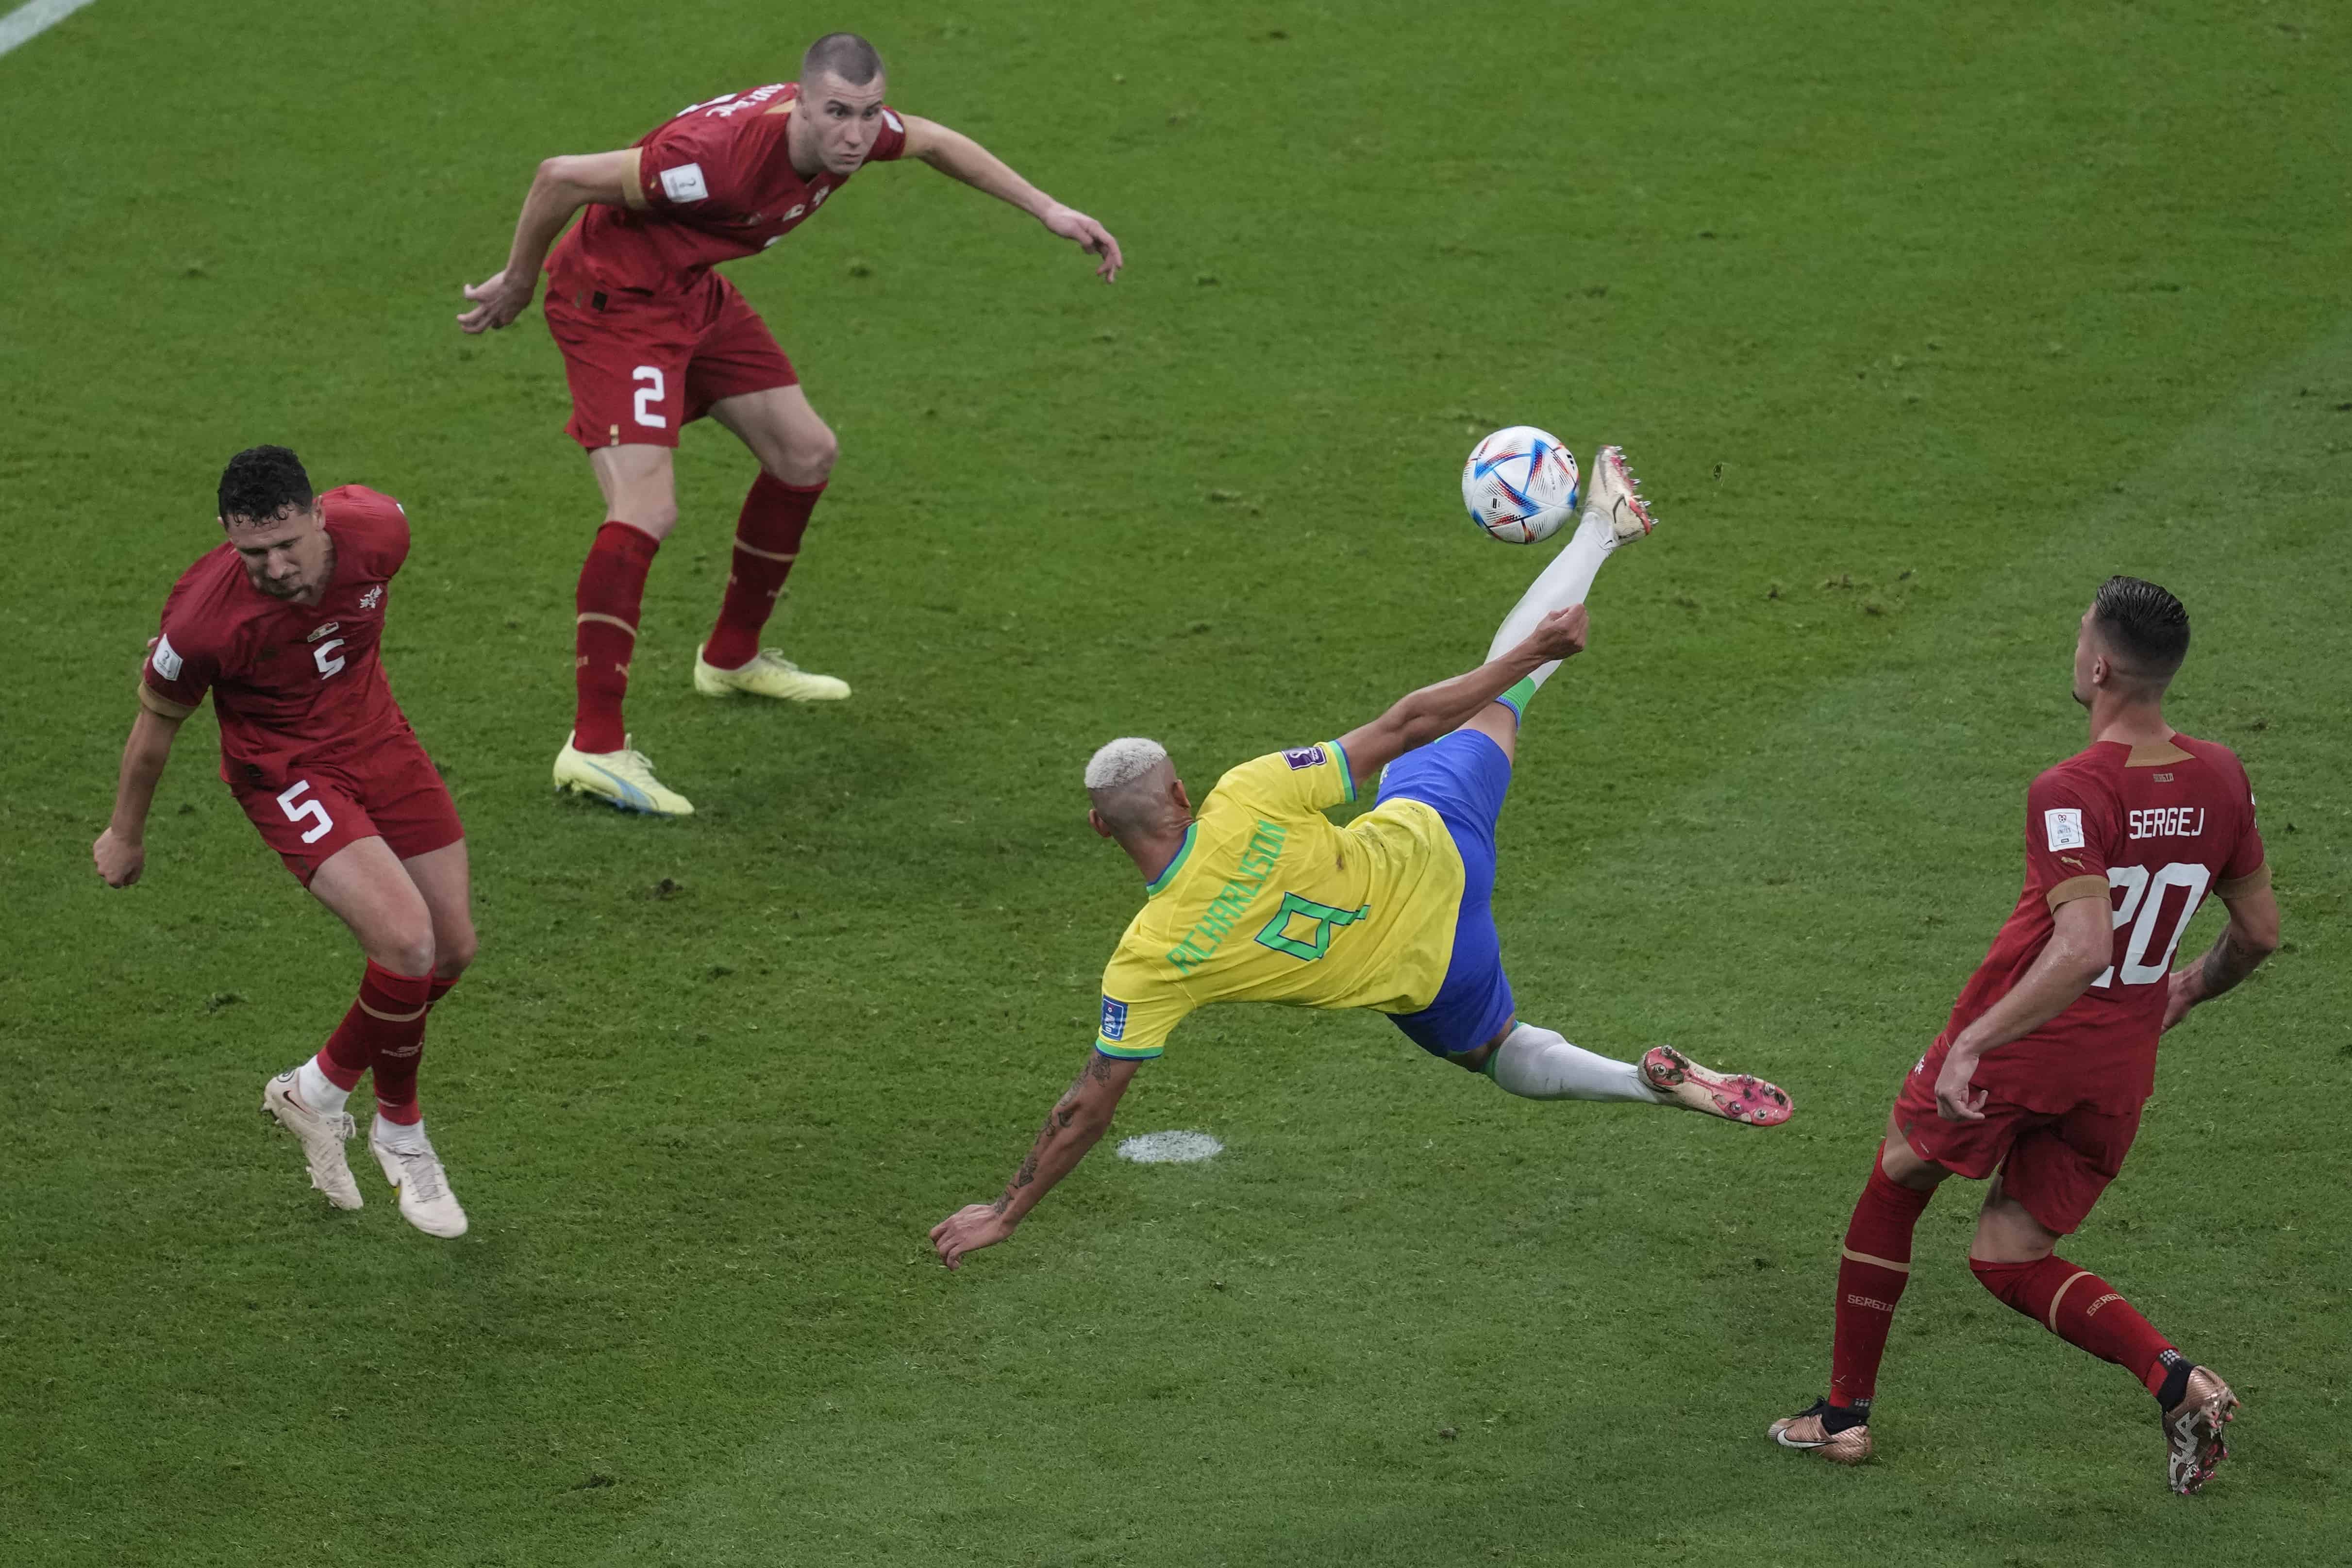 Richarlison de Brasil, segundo a la derecha, anota el segundo gol de su equipo contra Serbia durante el partido de fútbol del grupo G de la Copa Mundial entre Brasil y Serbia, en el Estadio Lusail en Lusail, Qatar, el jueves 24 de noviembre de 2022.